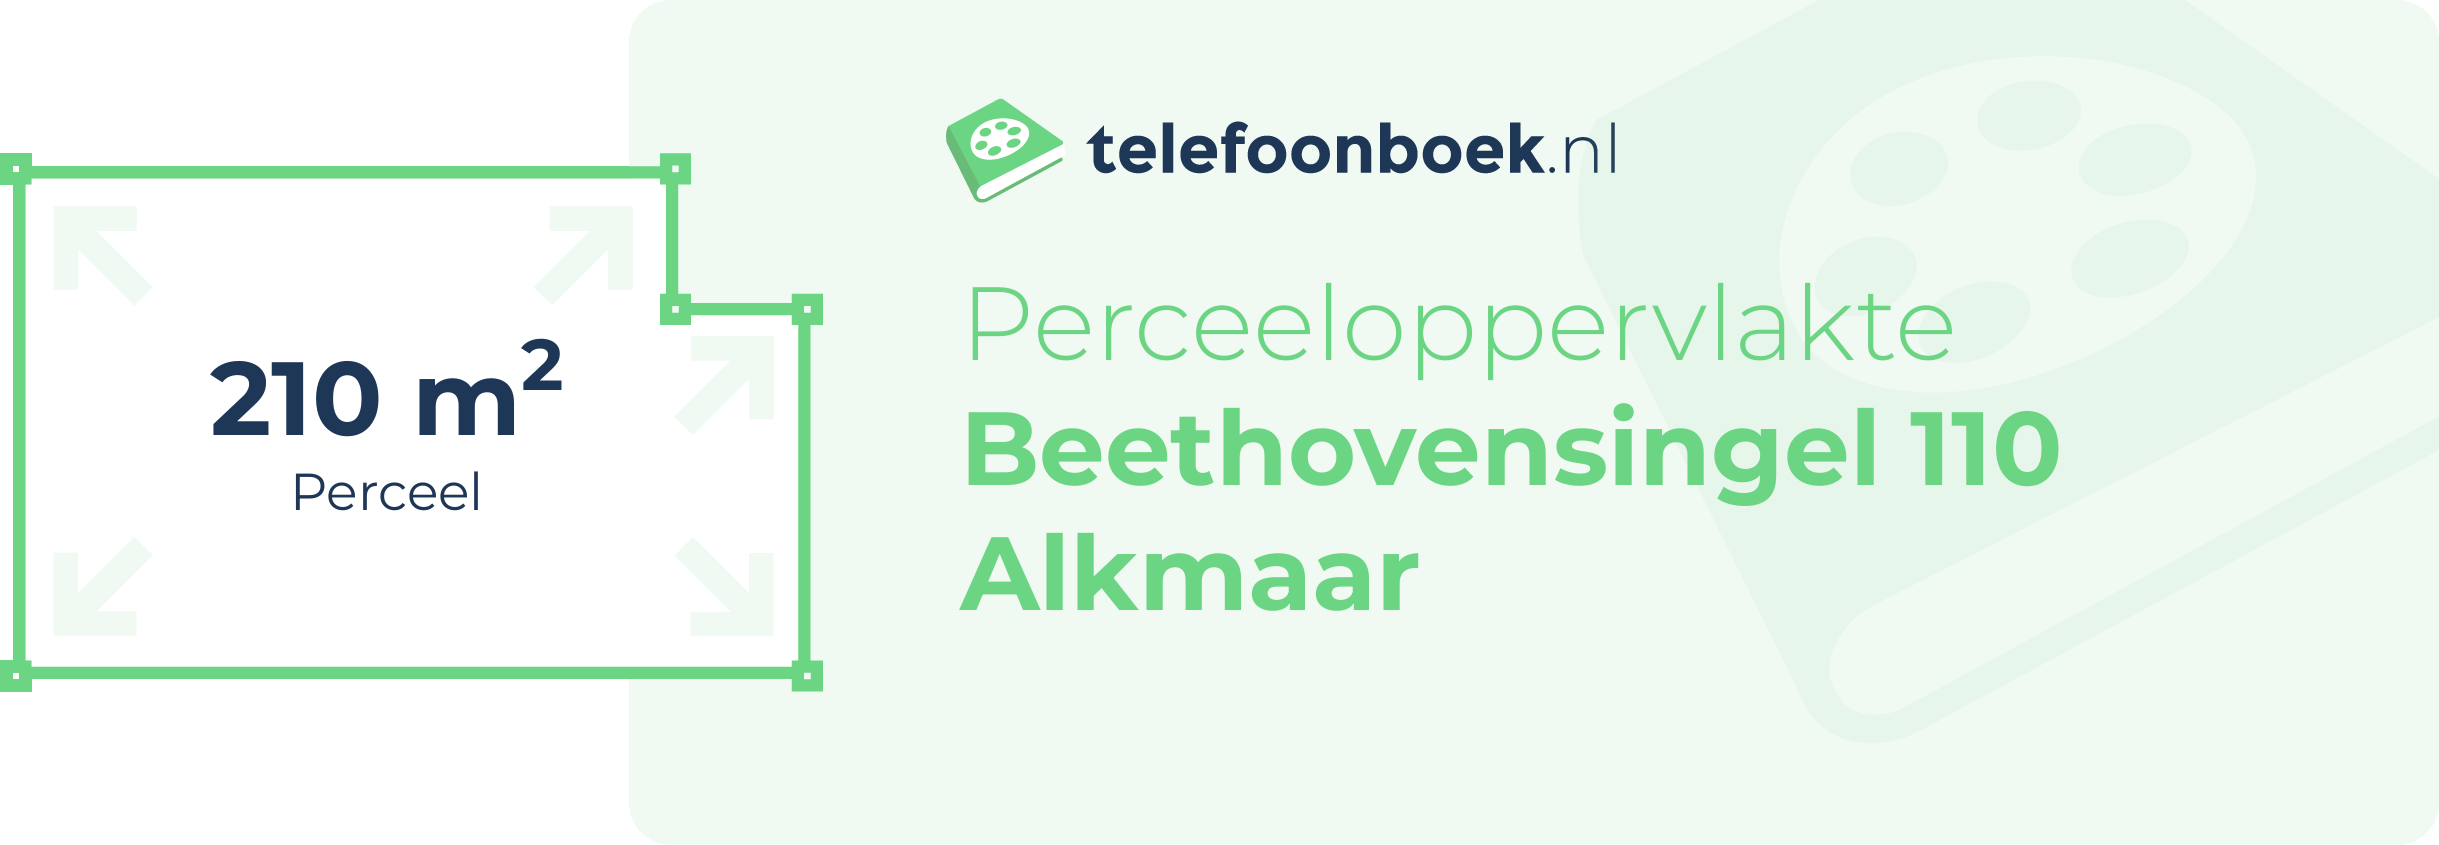 Perceeloppervlakte Beethovensingel 110 Alkmaar